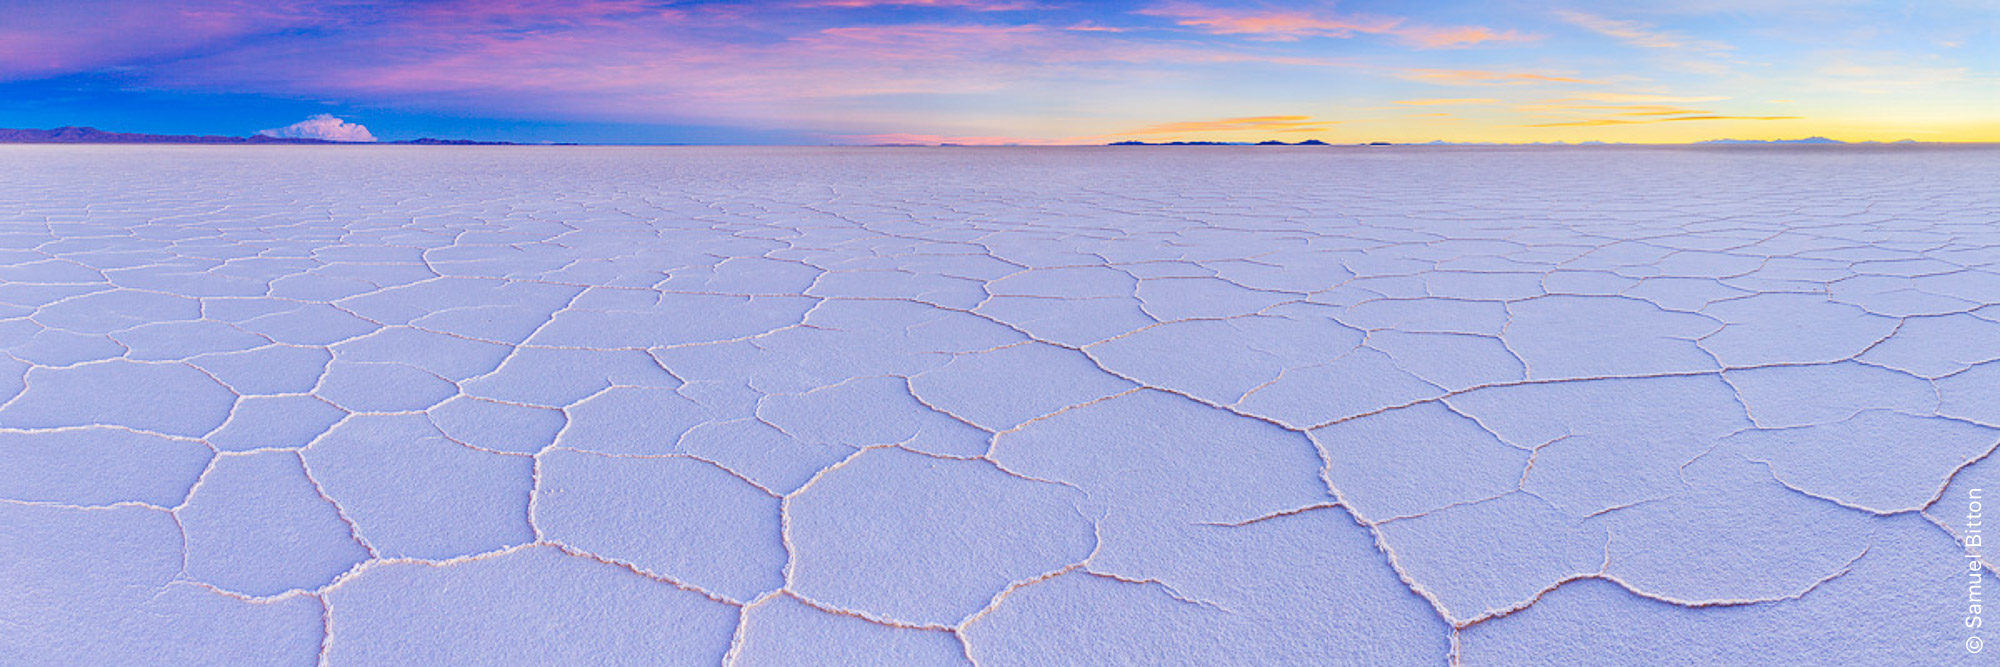 Salar d'Uyuni / Uyuni Salt Flat